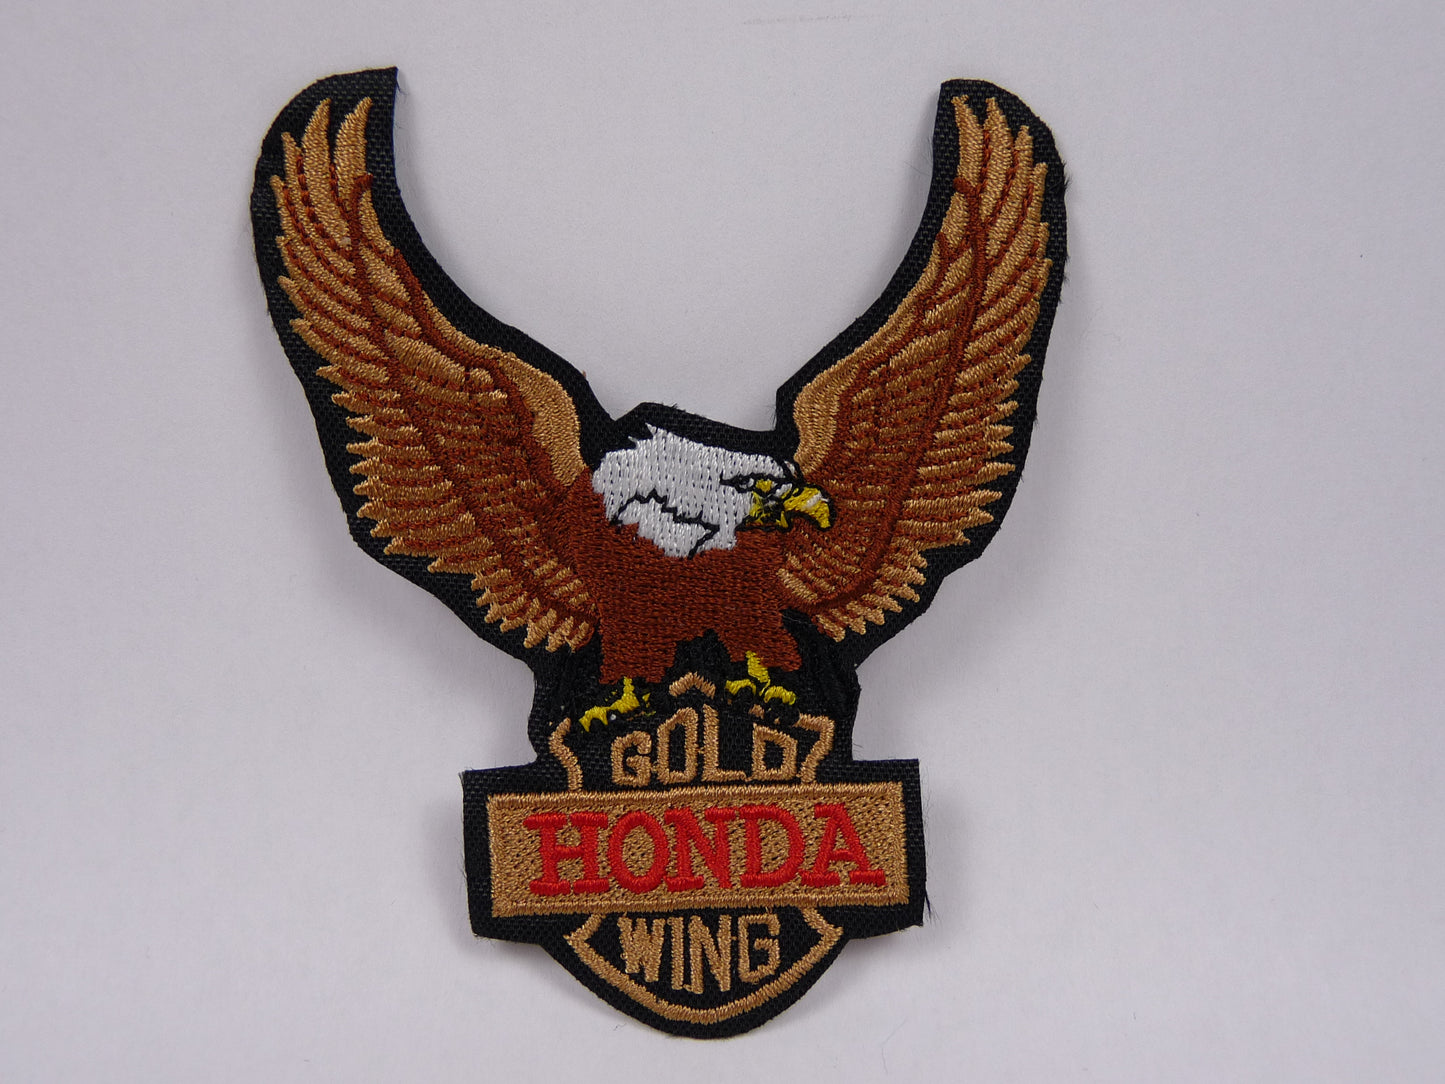 PTC10 Patch brodé thermocollé : logo Honda Goldwing largeur environ 7.5 cm hauteur environ 9 cm